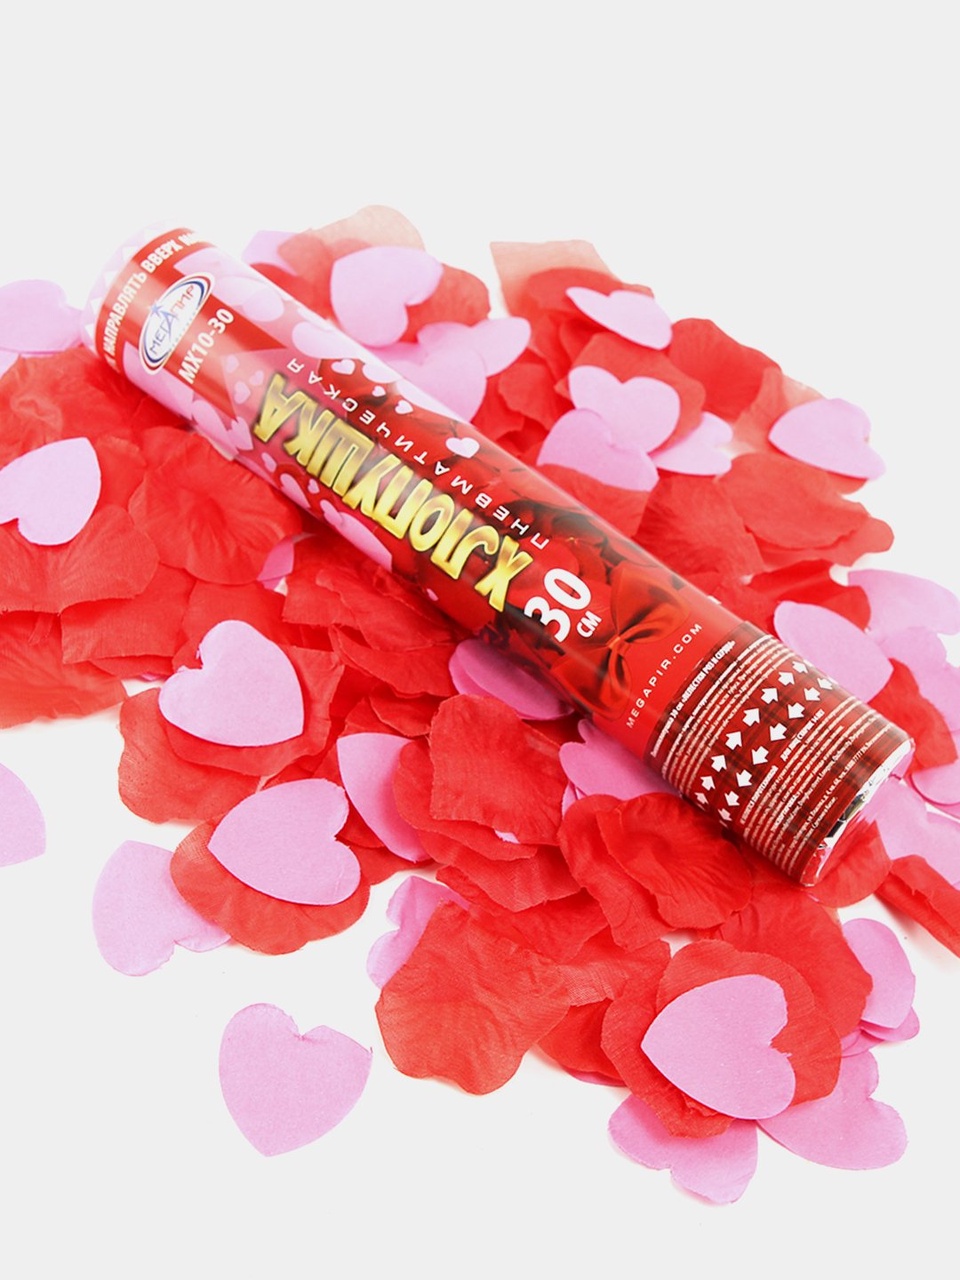 Пневматическая хлопушка 30 см наполнитель конфетти лепестки роз из ткани + розовые сердца из бумаги МХ10-30 - 200 ₽, заказать онлайн.